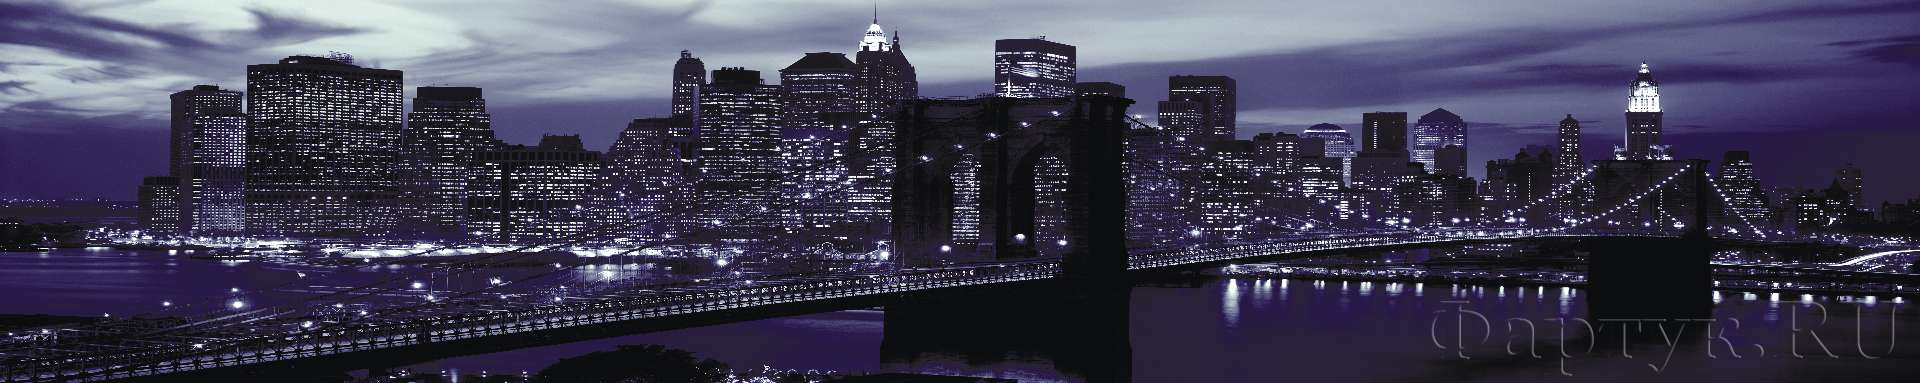 Бруклинский мост в фиолетовом